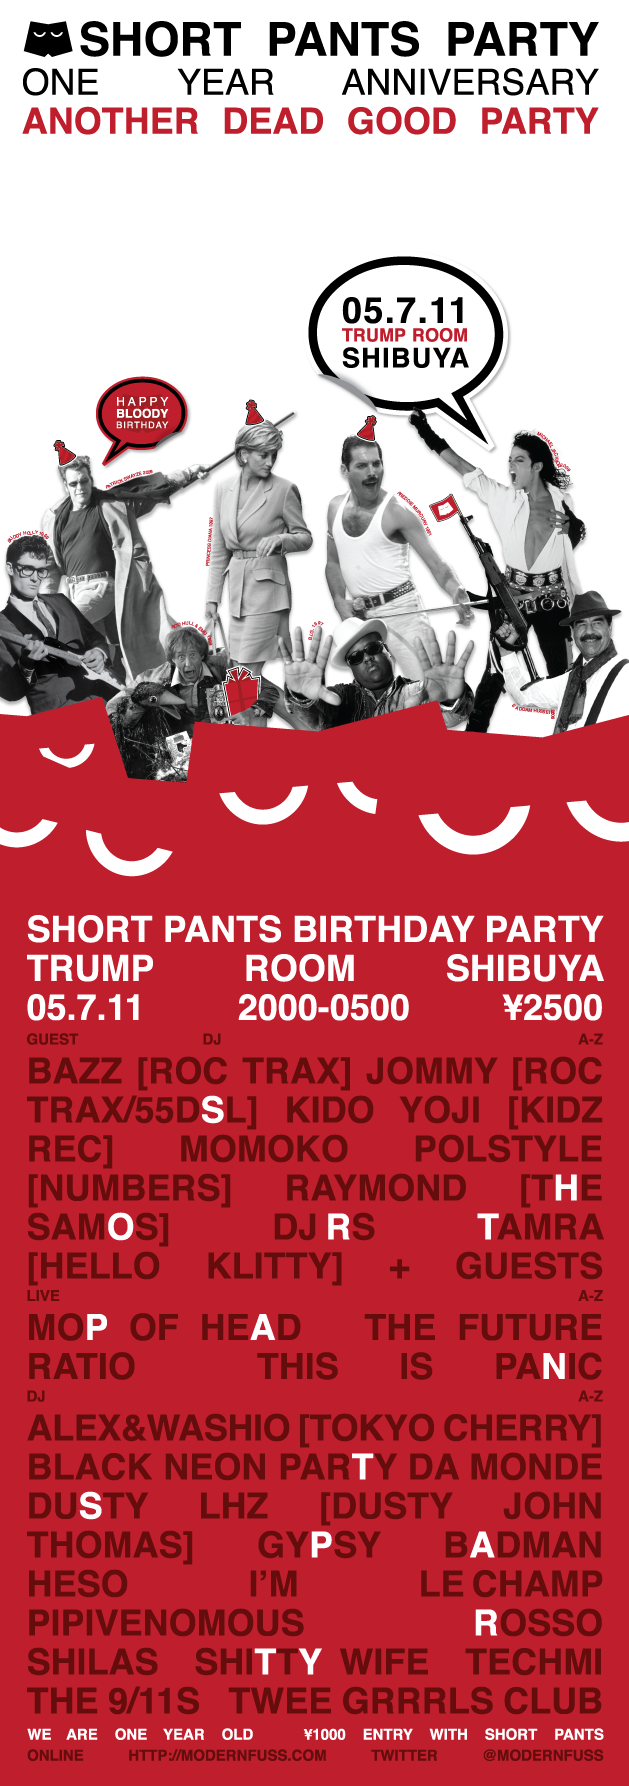 Short Pants Party Main Image